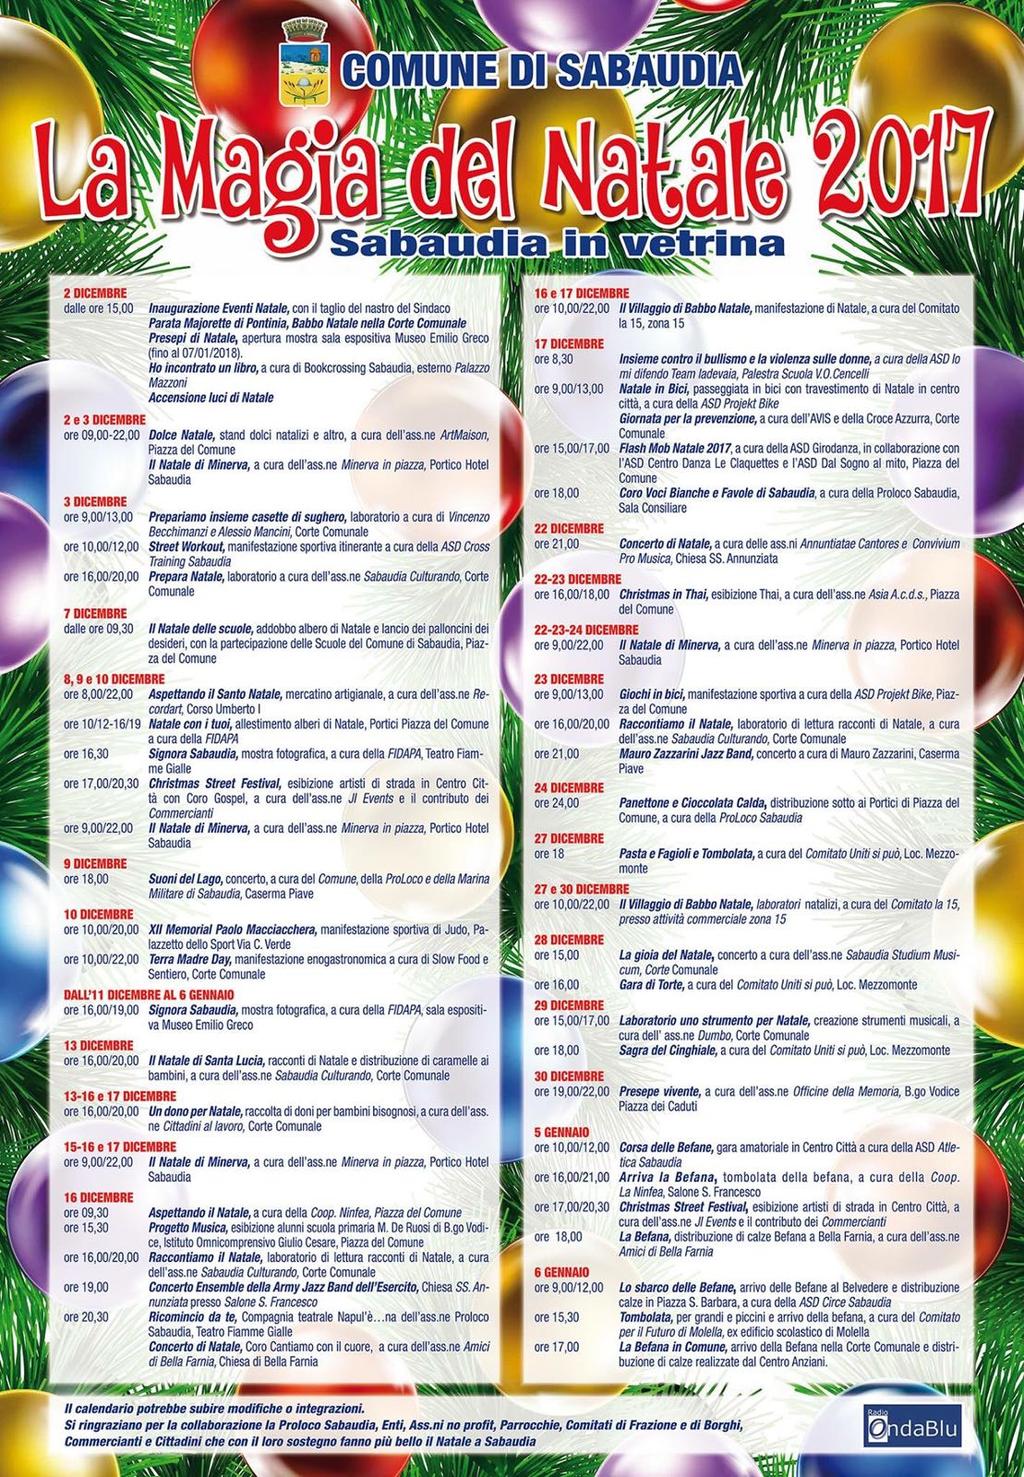 Venerdì 29 dicembre, saranno due gli eventi che coloreranno la giornata nella città di Sabaudia.